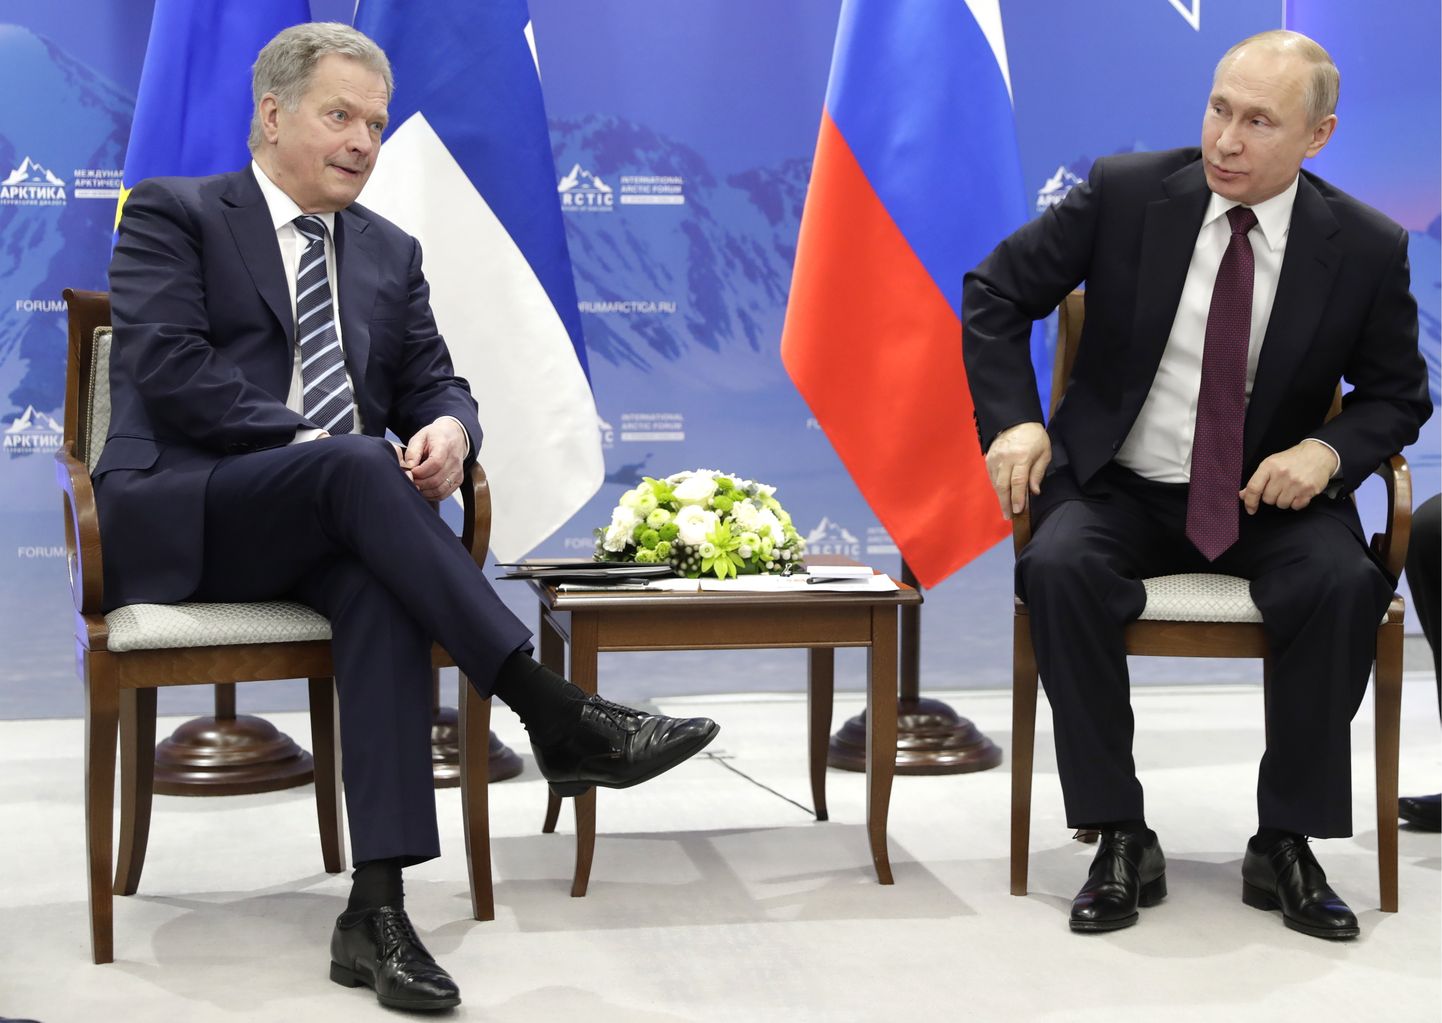 Soome president Sauli Niinistö ja Venemaa president Vladimir Putin aprillis Peterburis Arktika nõukogul.